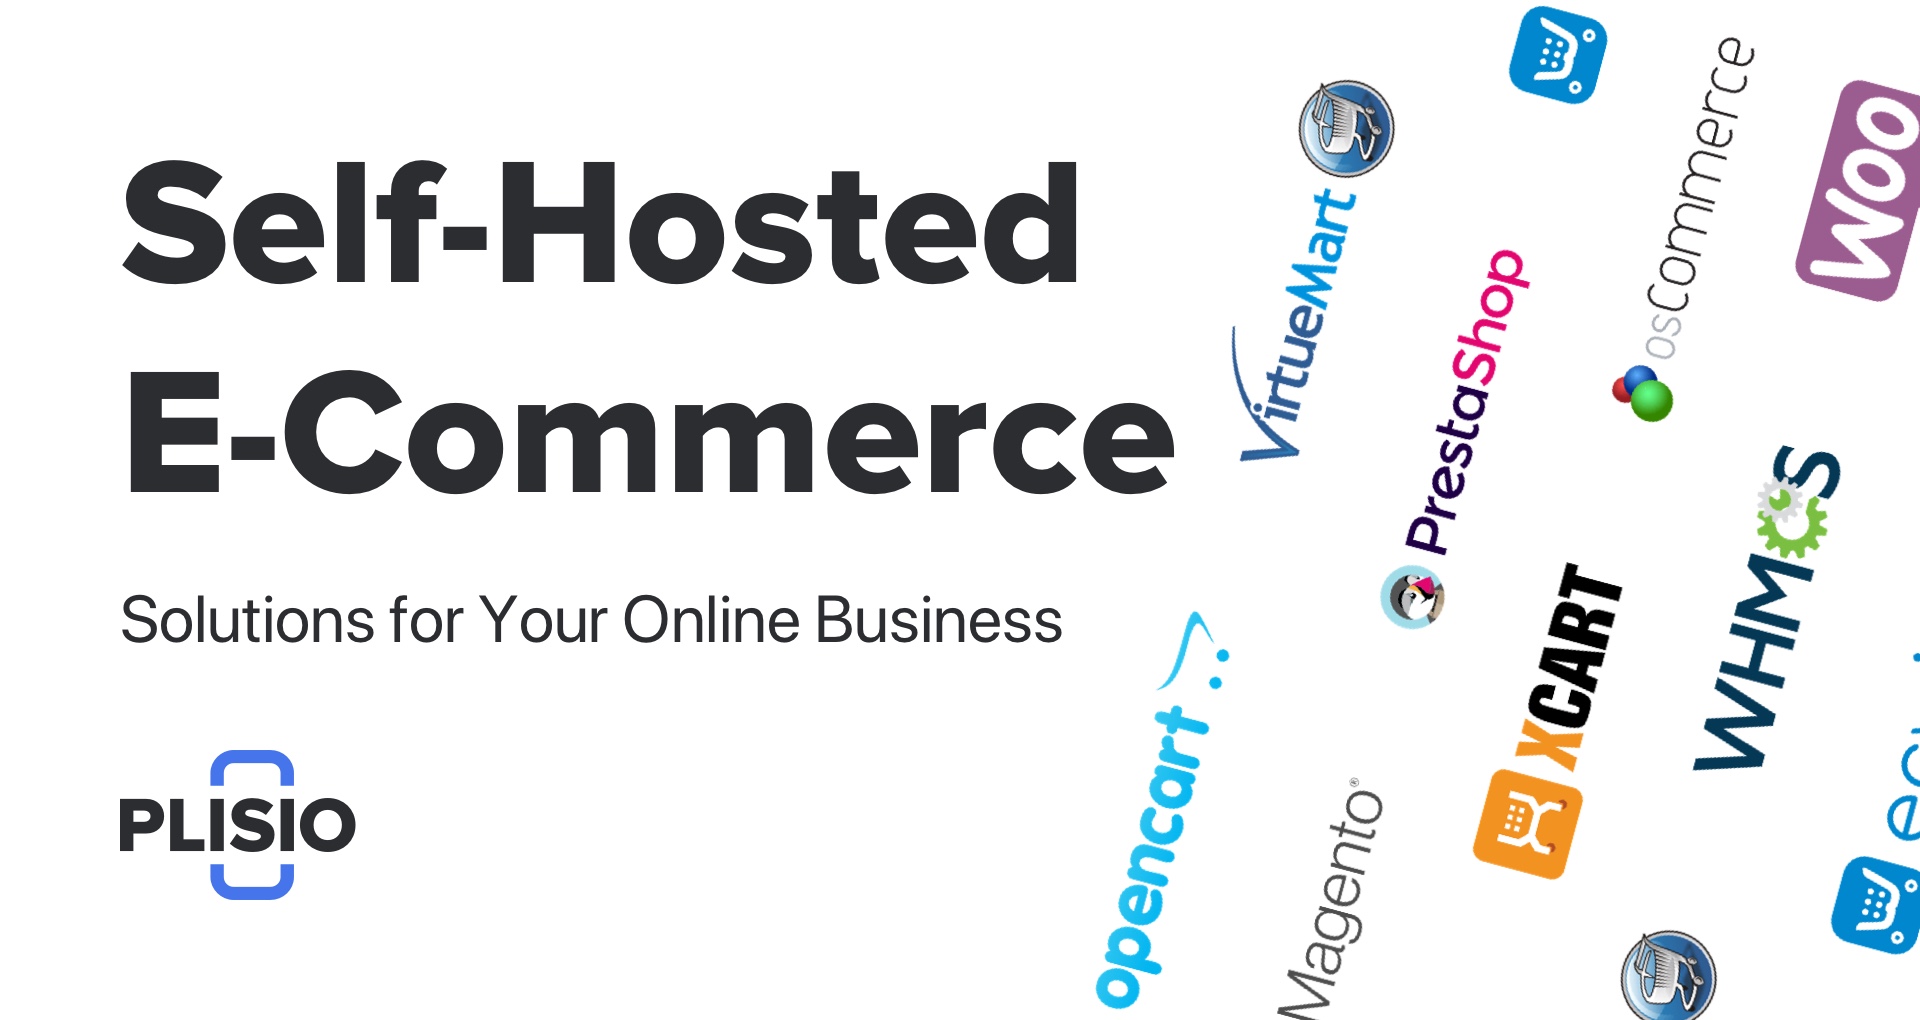 Solusi E-Commerce Self-Hosted Terbaik untuk Bisnis Online Anda